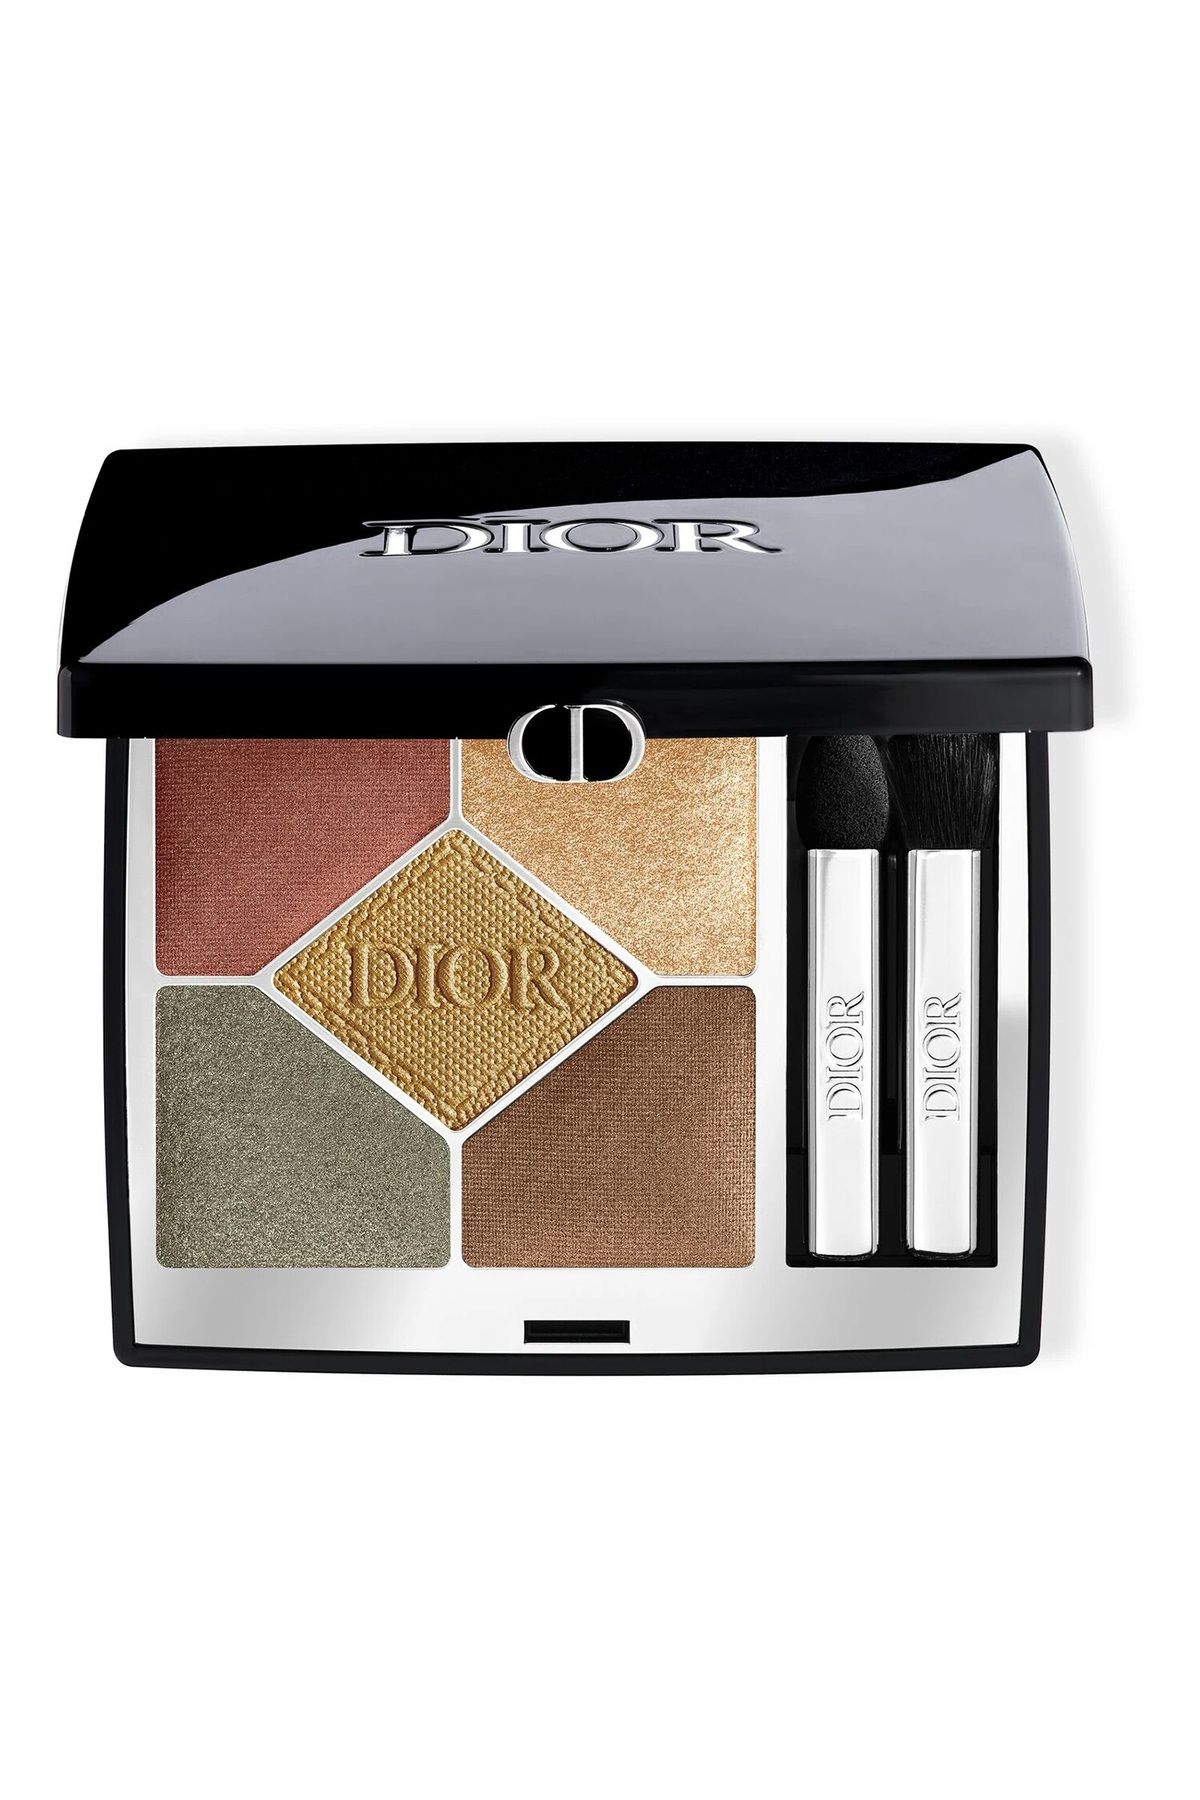 Dior 5 Couleurs Couture Eyeshadow Palette-Özel Olarak Tasarlanmış Pürüzsüz Canlandırıcı Göz Far Paleti